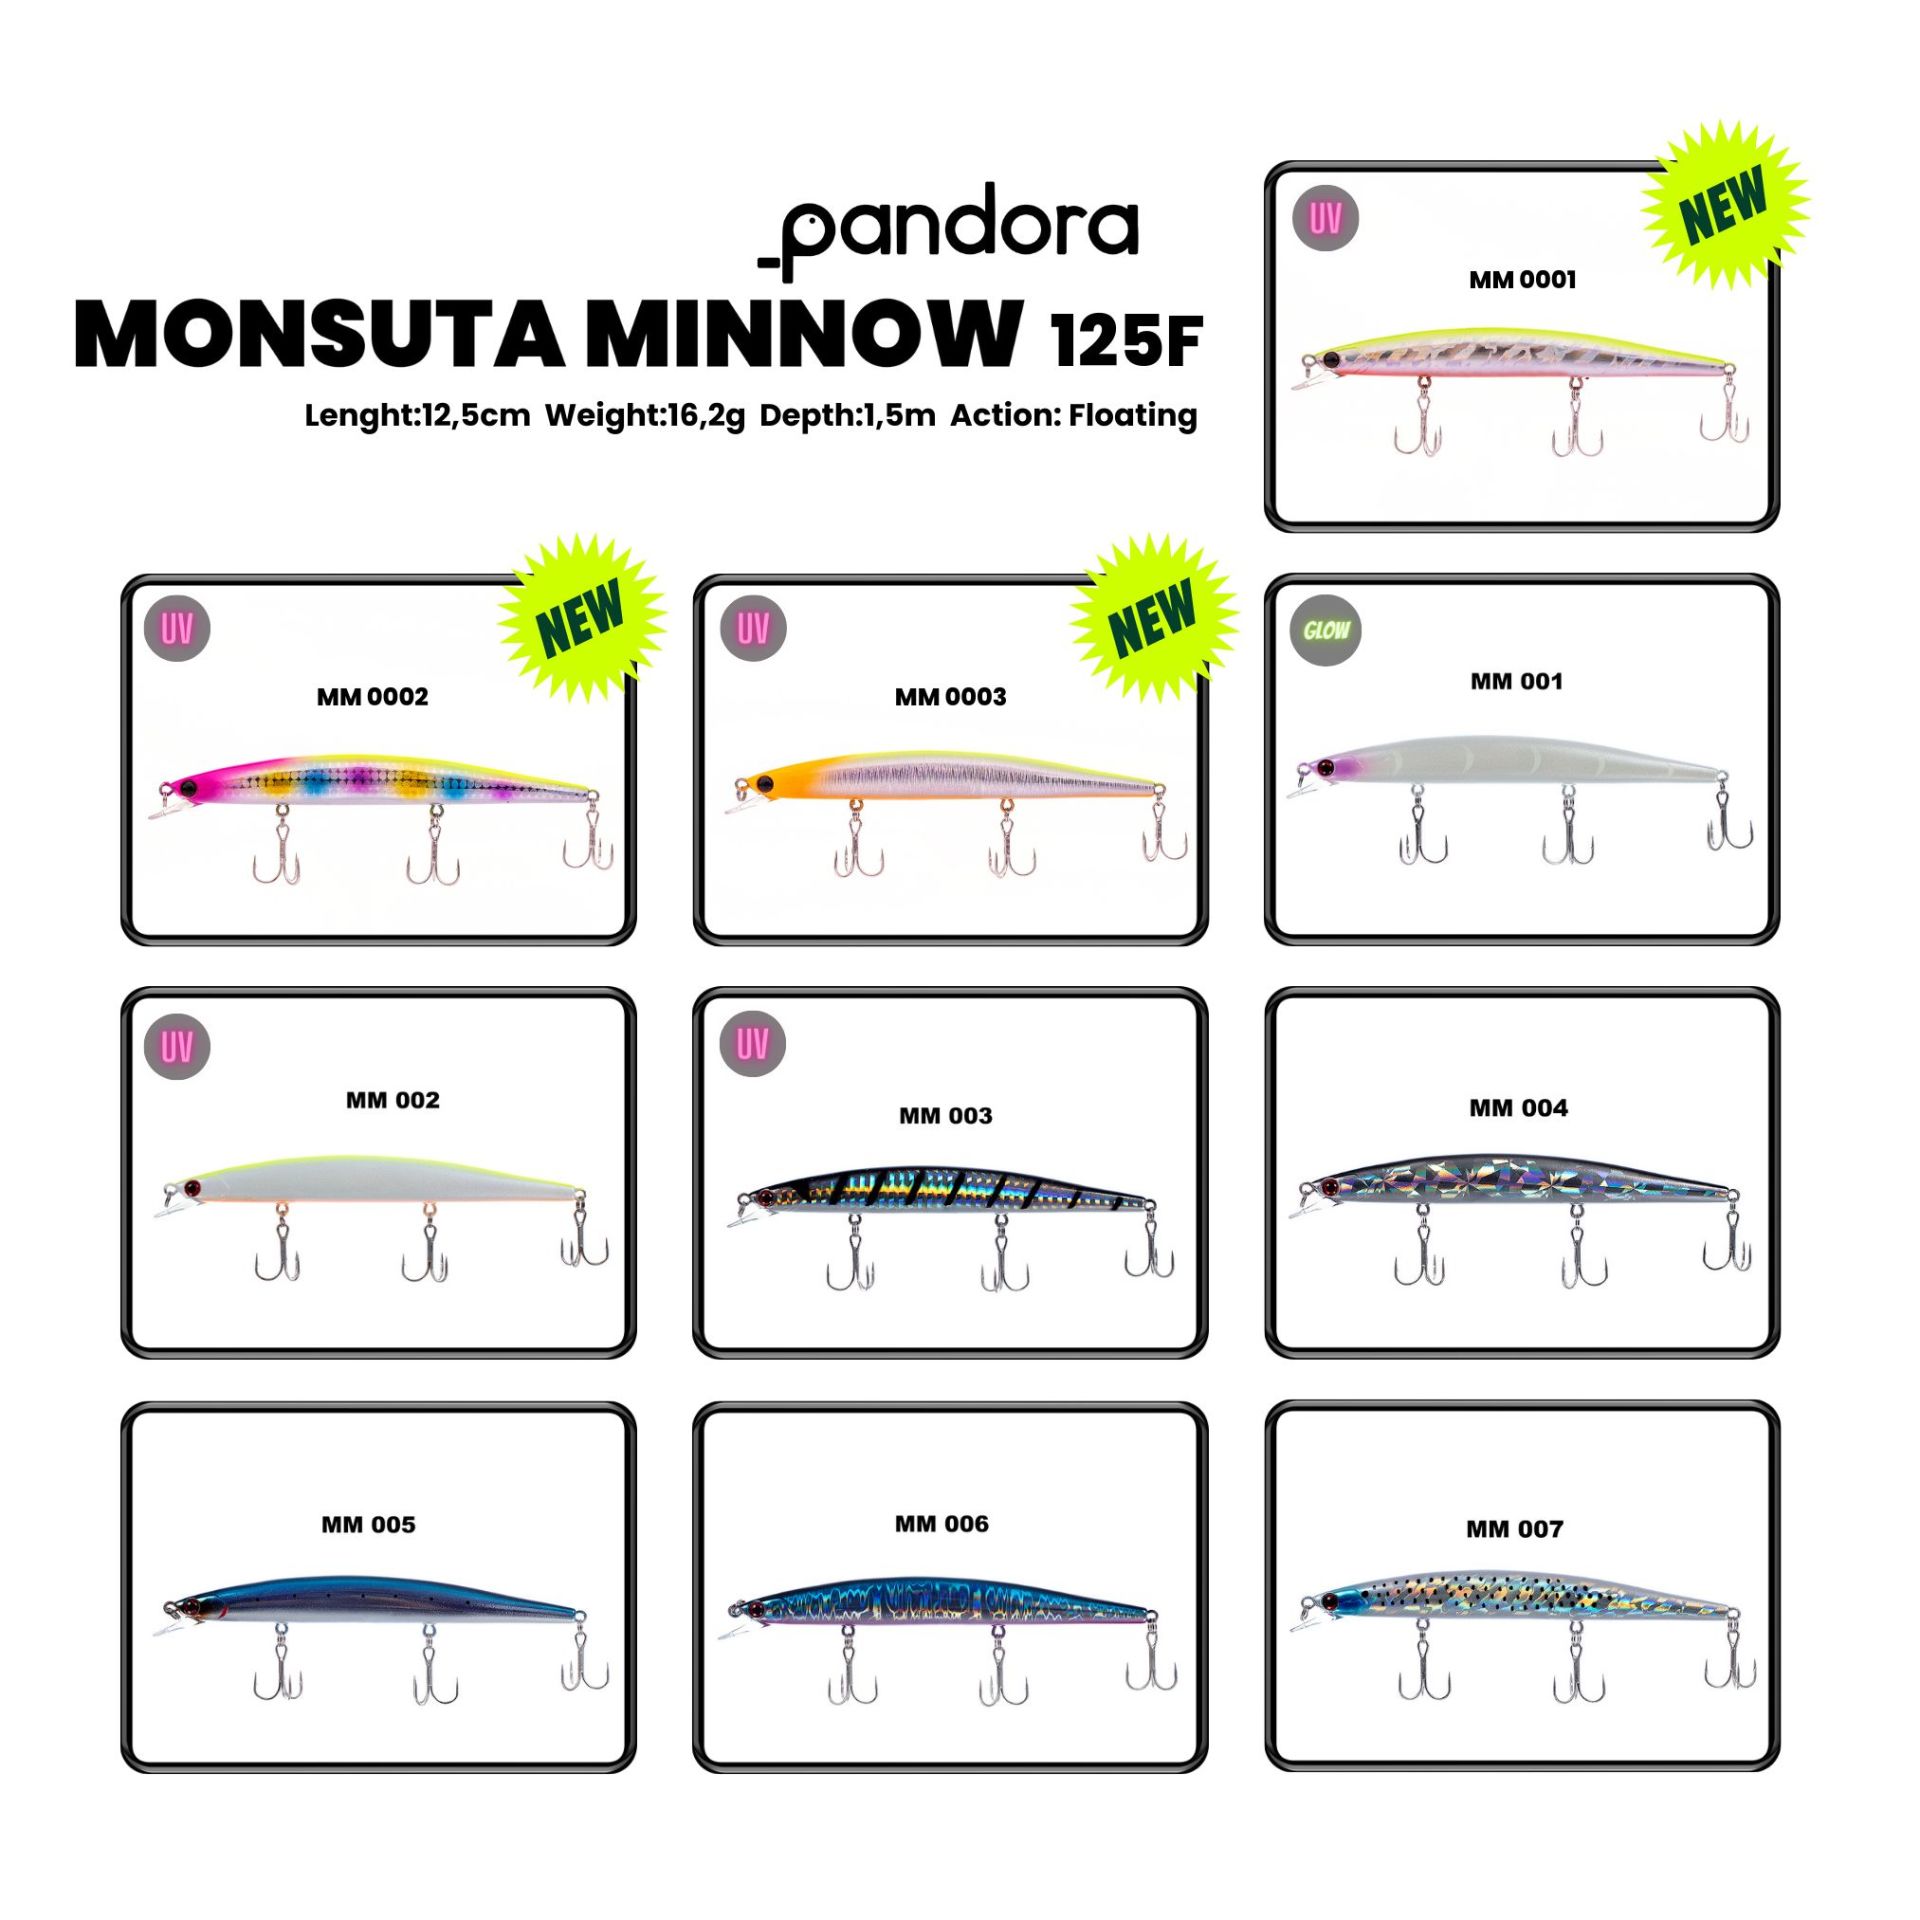 Pandora Monsuta Minnow F125